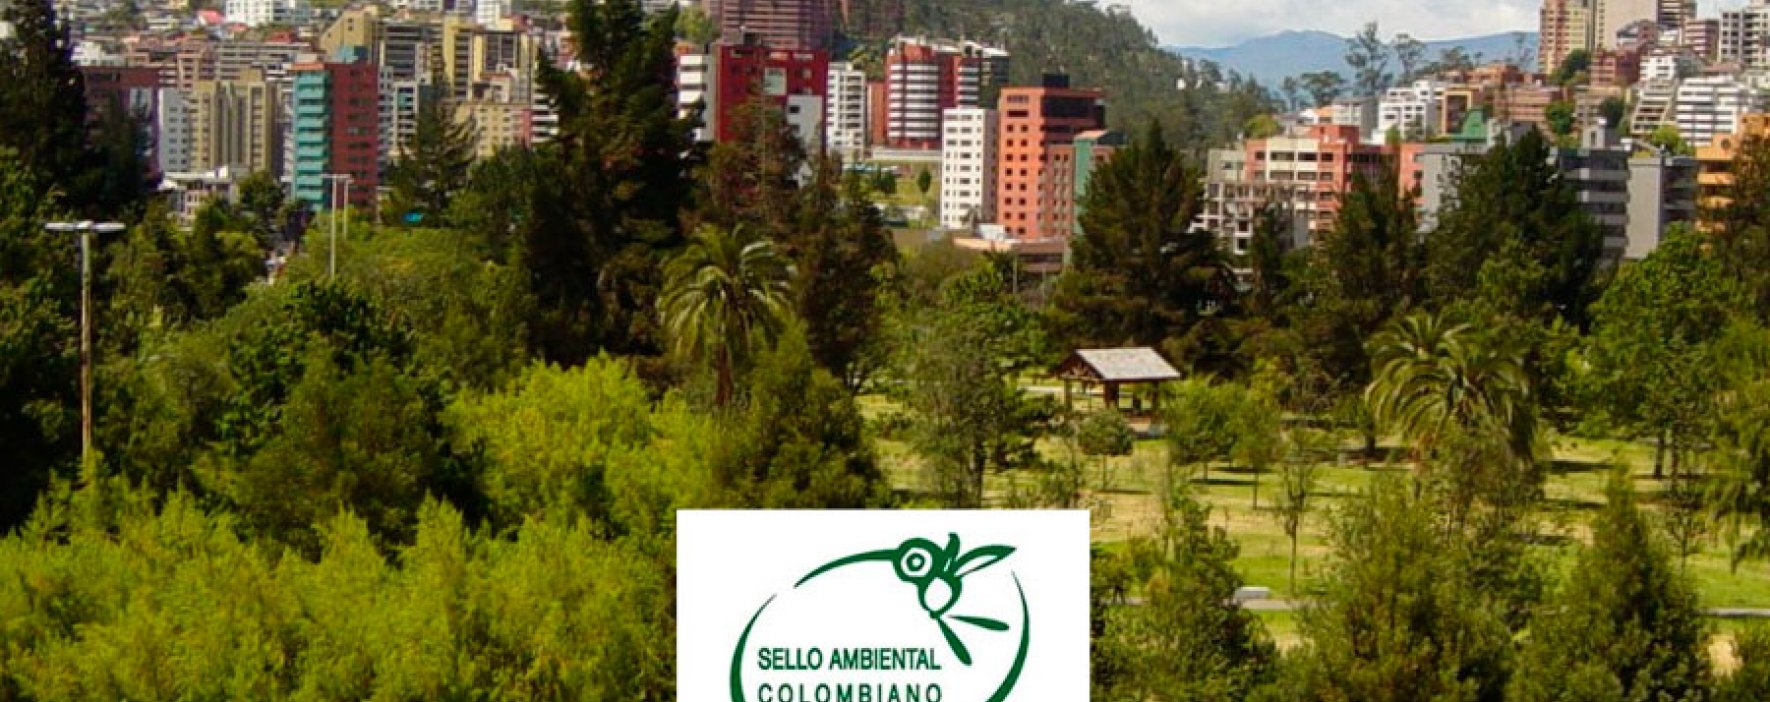 ¿Su empresa ya cuenta con el Sello Ambiental Colombiano?